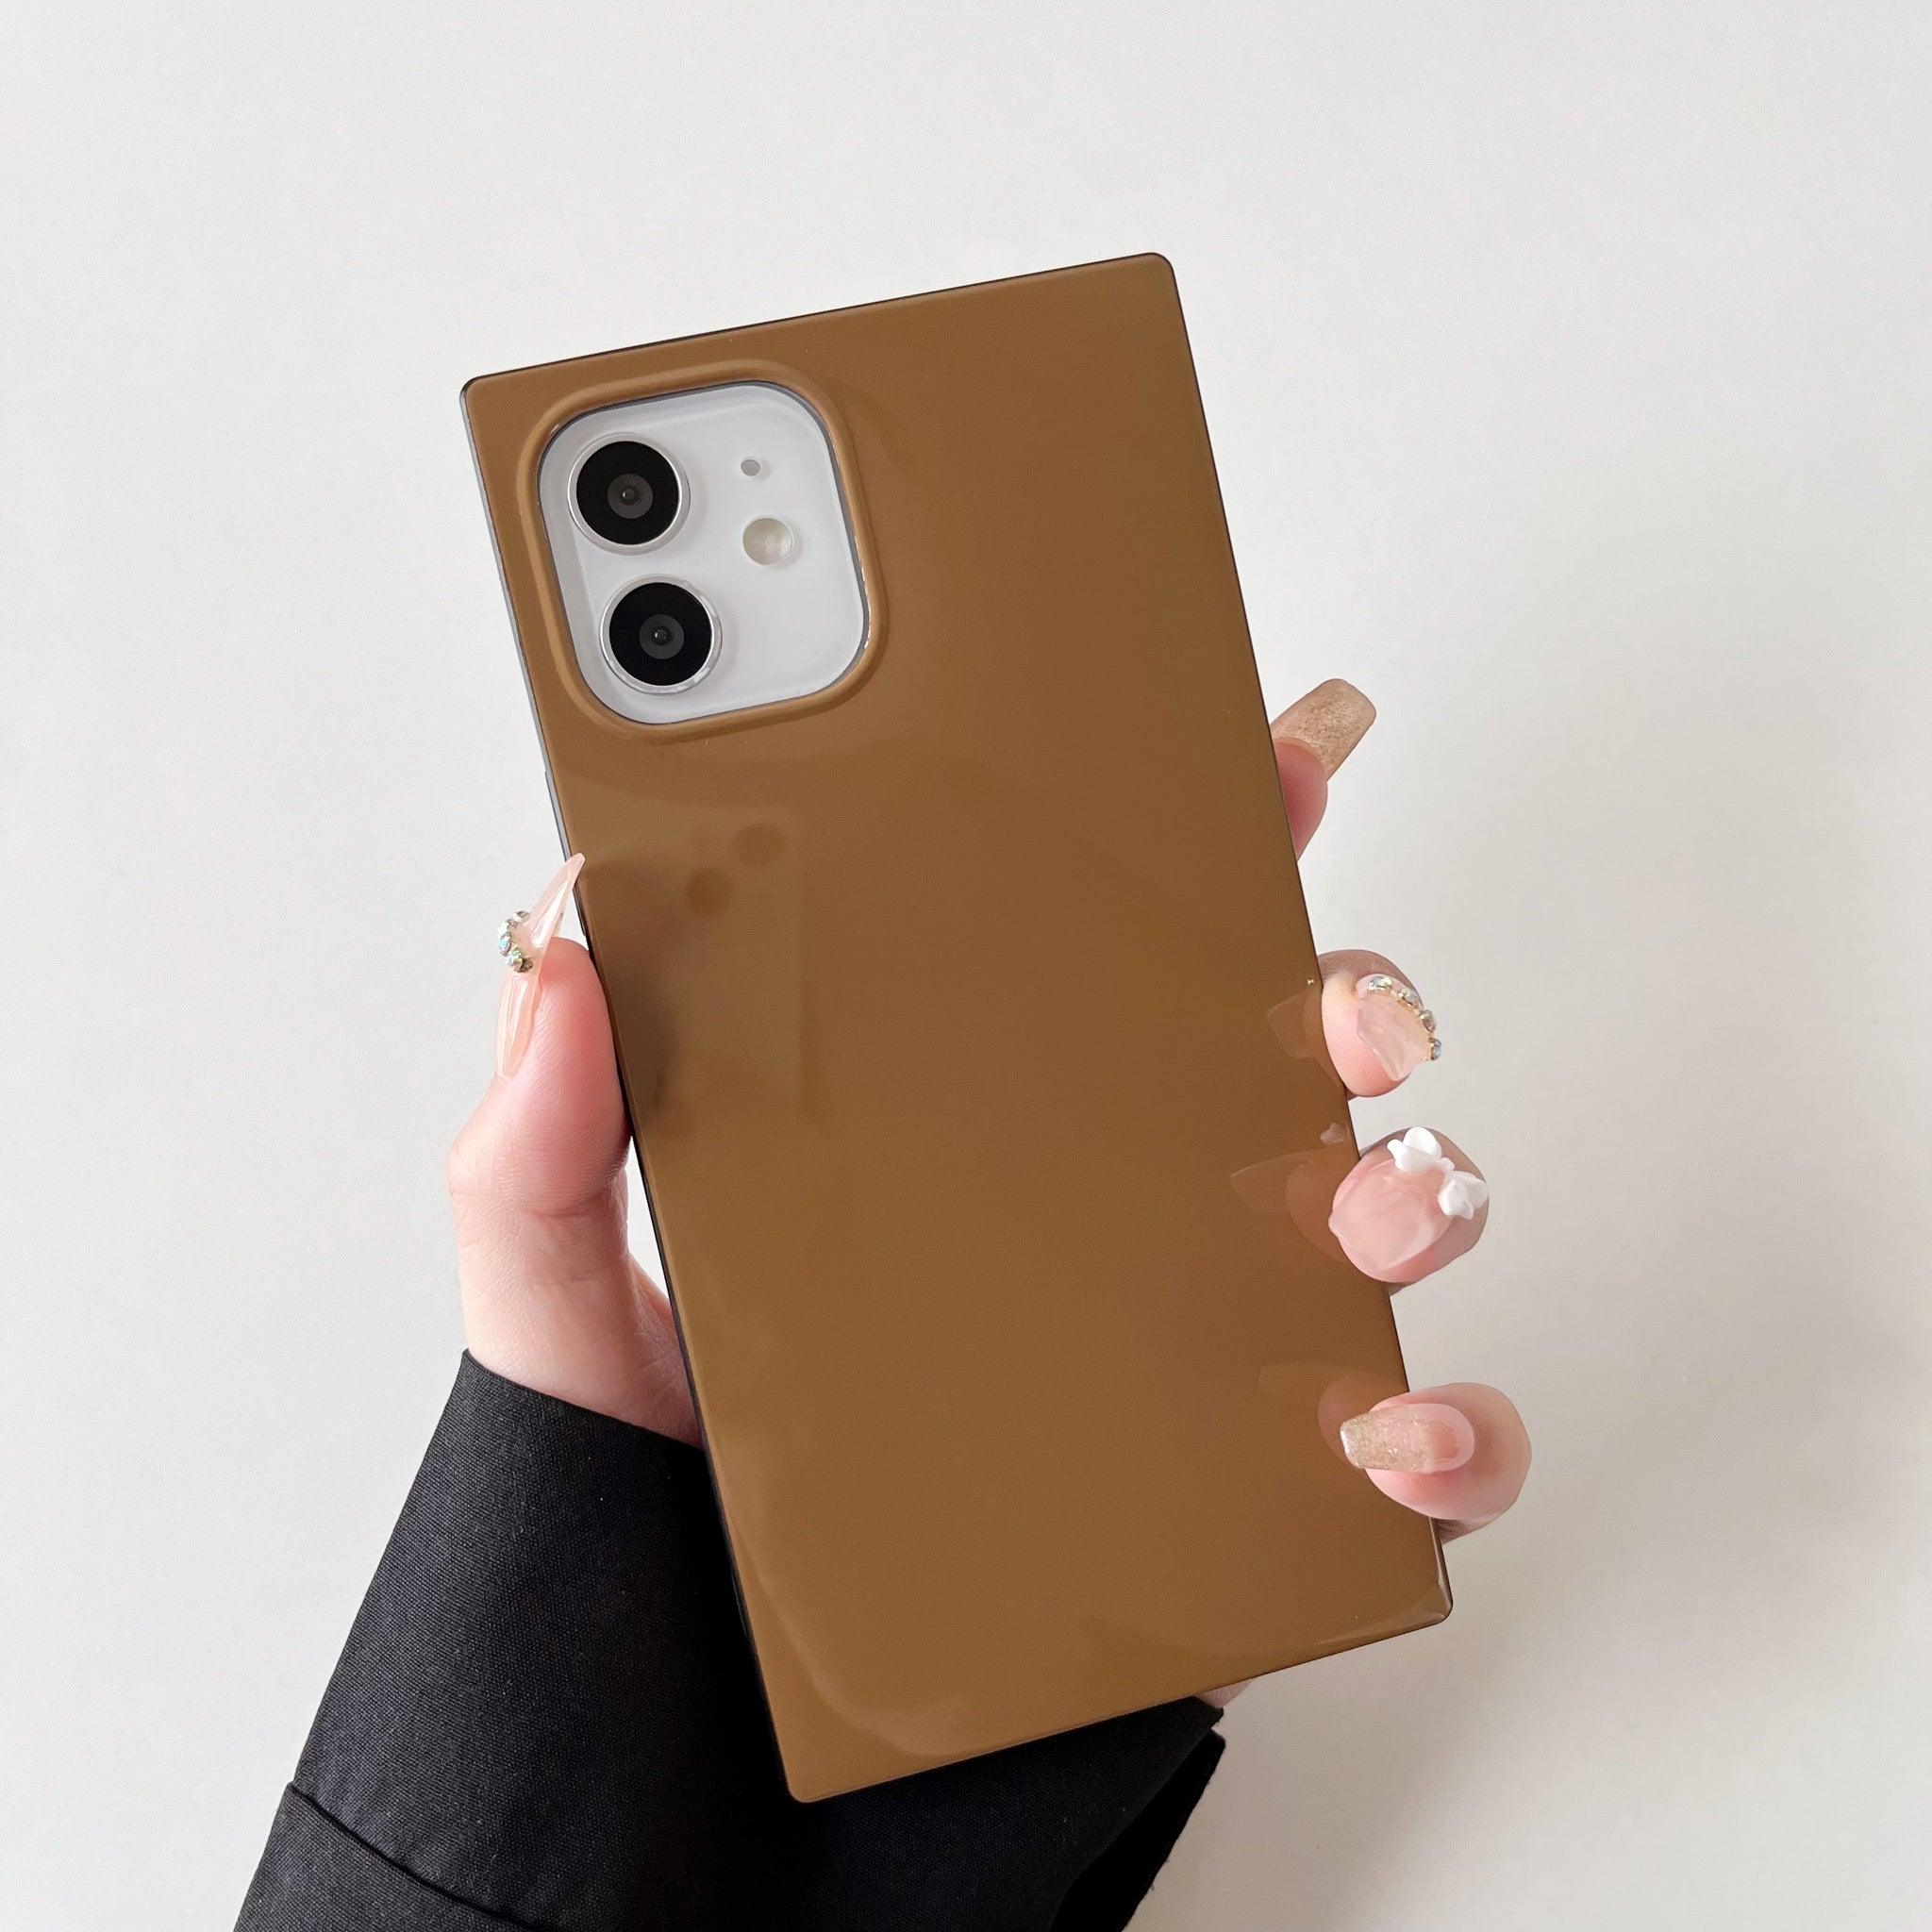 iPhone 11 Pro Max Case Square Neutral Plain Color (Golden Brown)